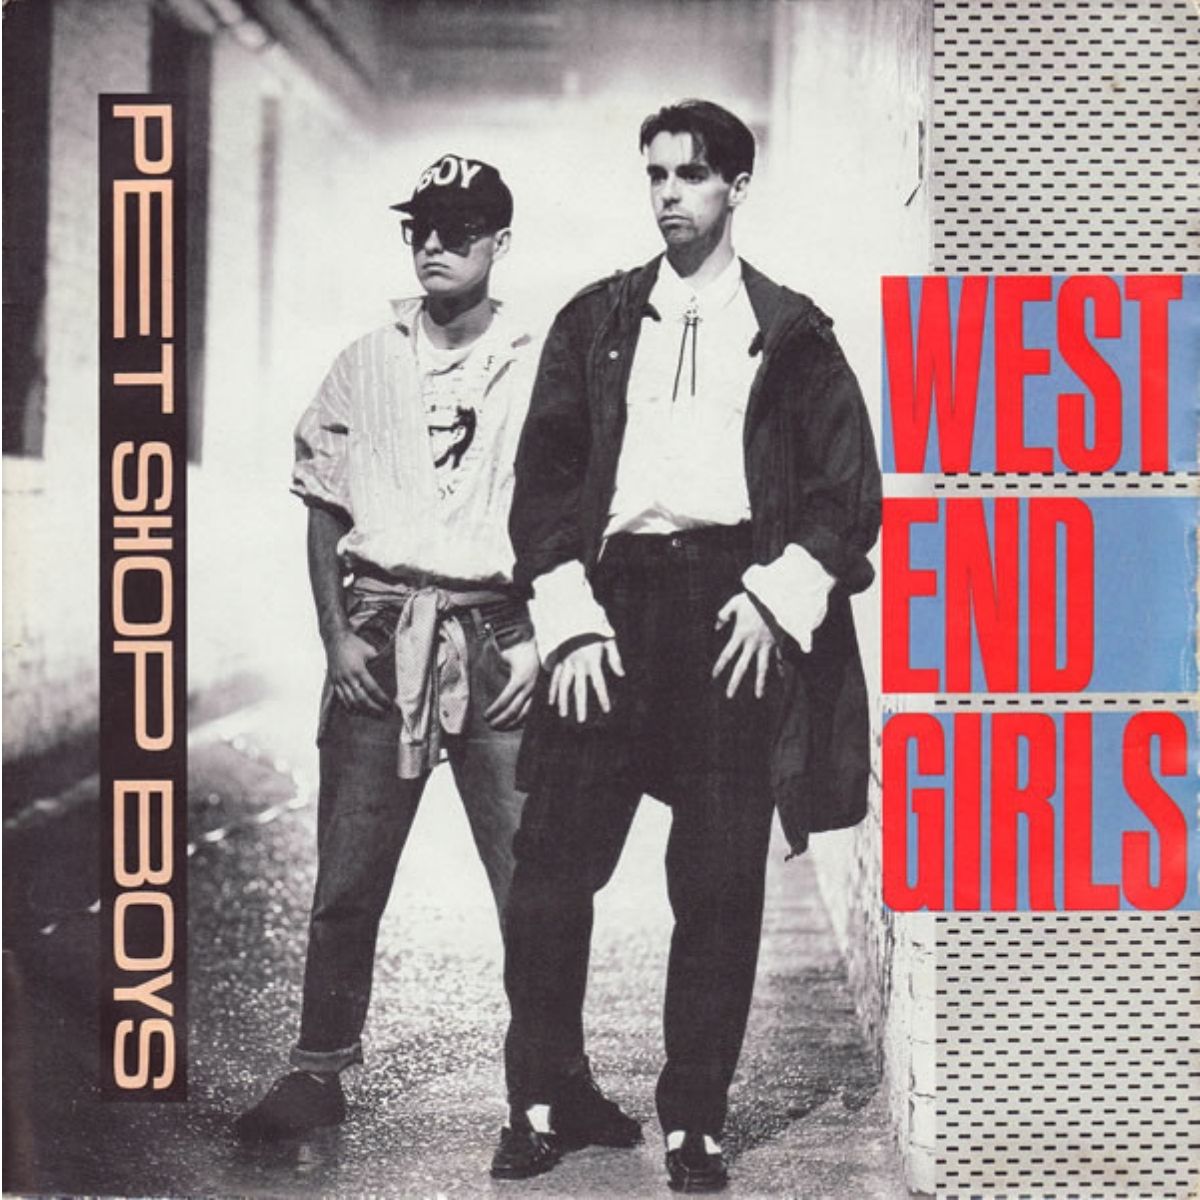 Portada del single "West End Girls" de los Pet Shop Boys